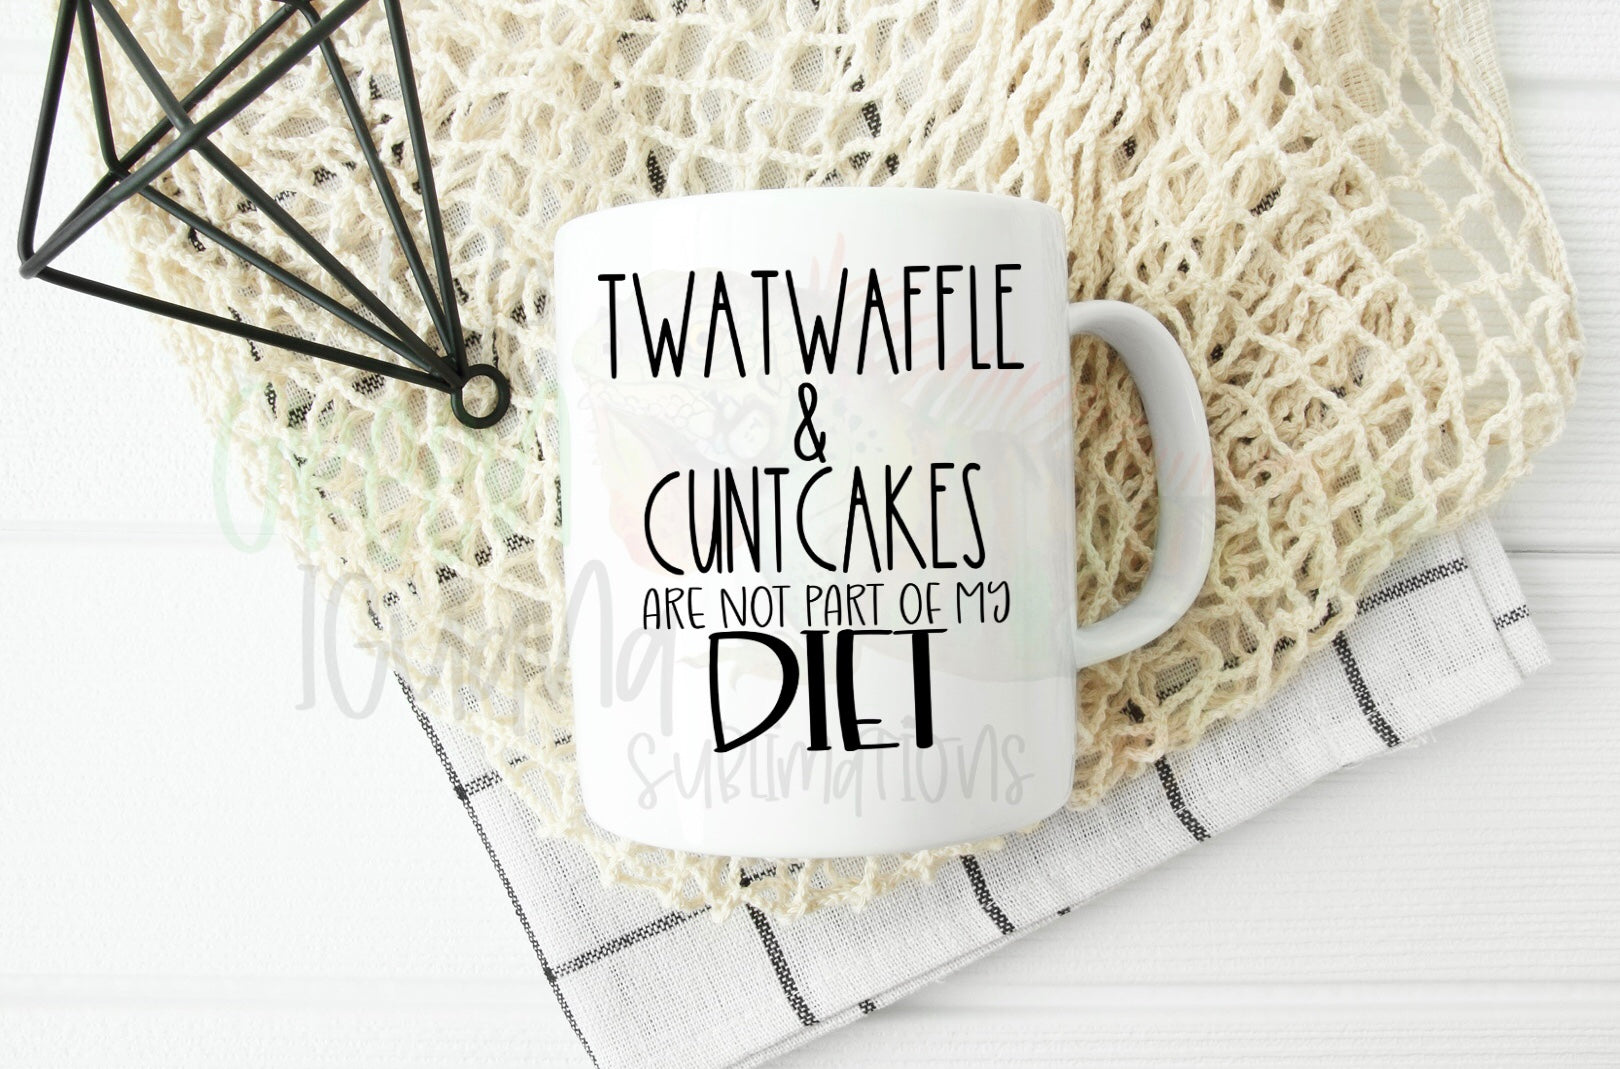 Twatwaffle & cuntcakes...